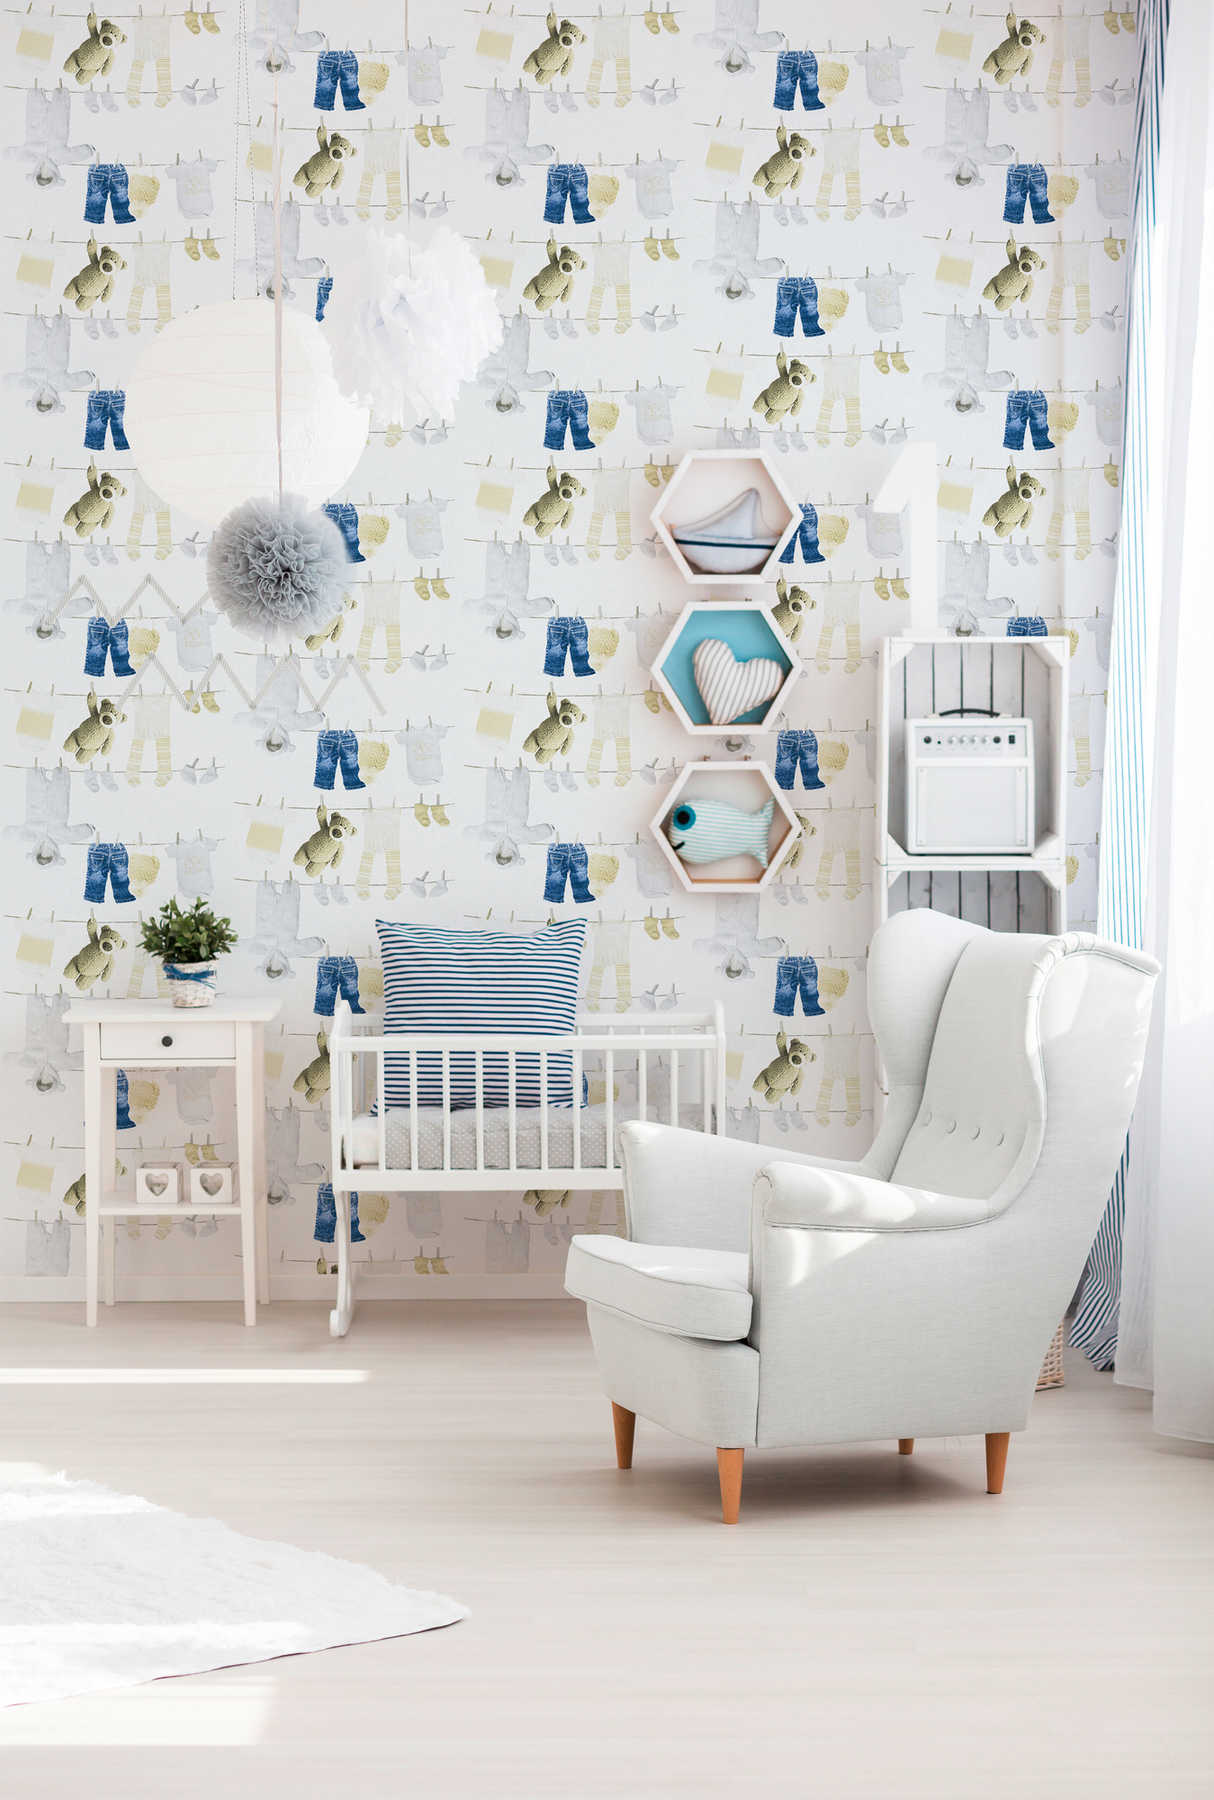             Babyzimmer Tapete mit Kinder Motiv Wäscheleinen – Weiß
        